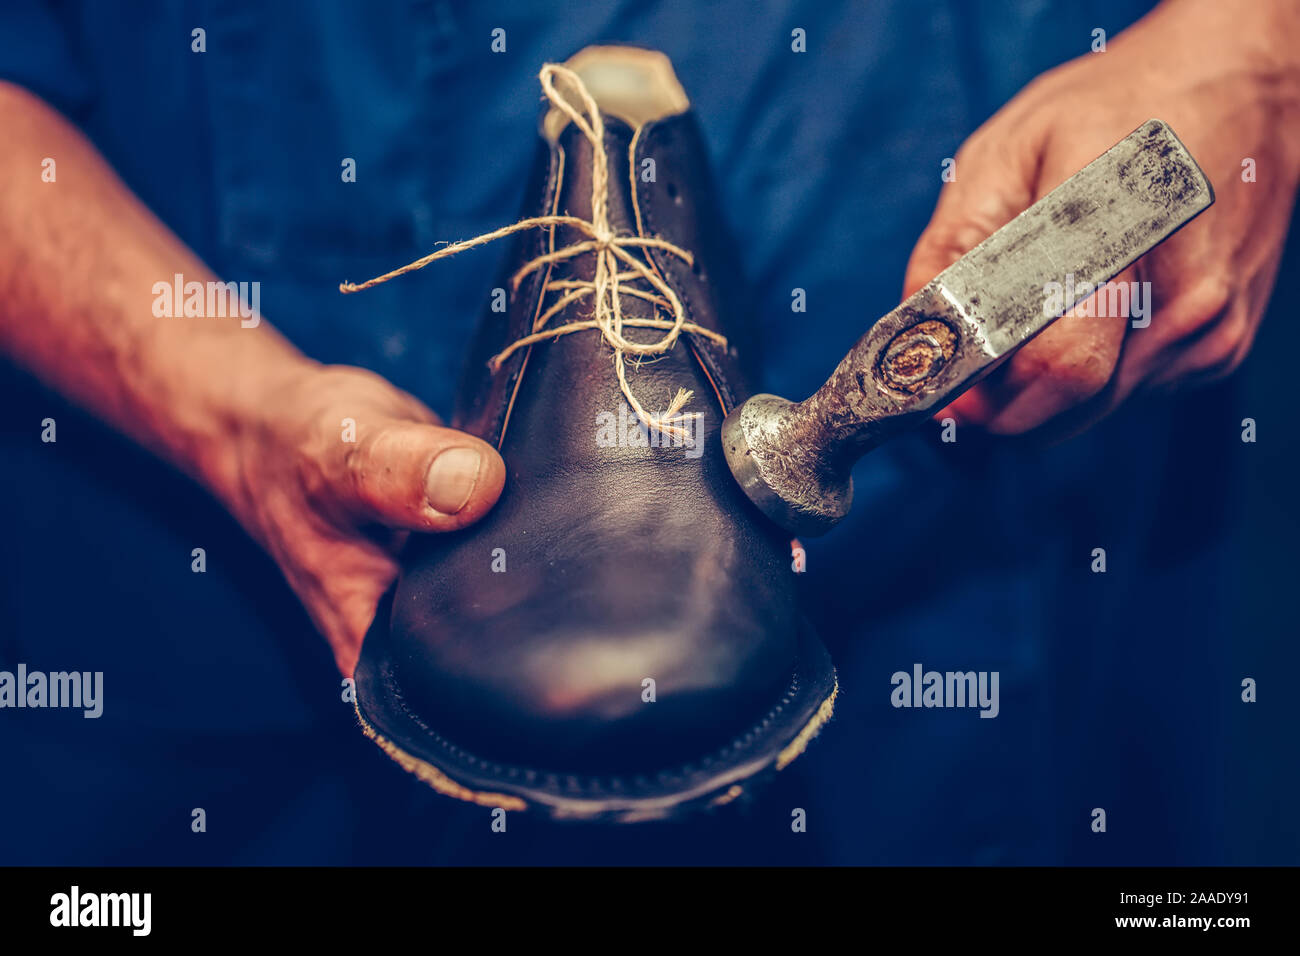 Atelier de cordonnier pour faire montre de la fabrication artisanale des  chaussures en cuir fait main. Fabrication de chaussures traditionnelles  pour affaires, ce qui rend la chaussure vintage, craf Photo Stock -